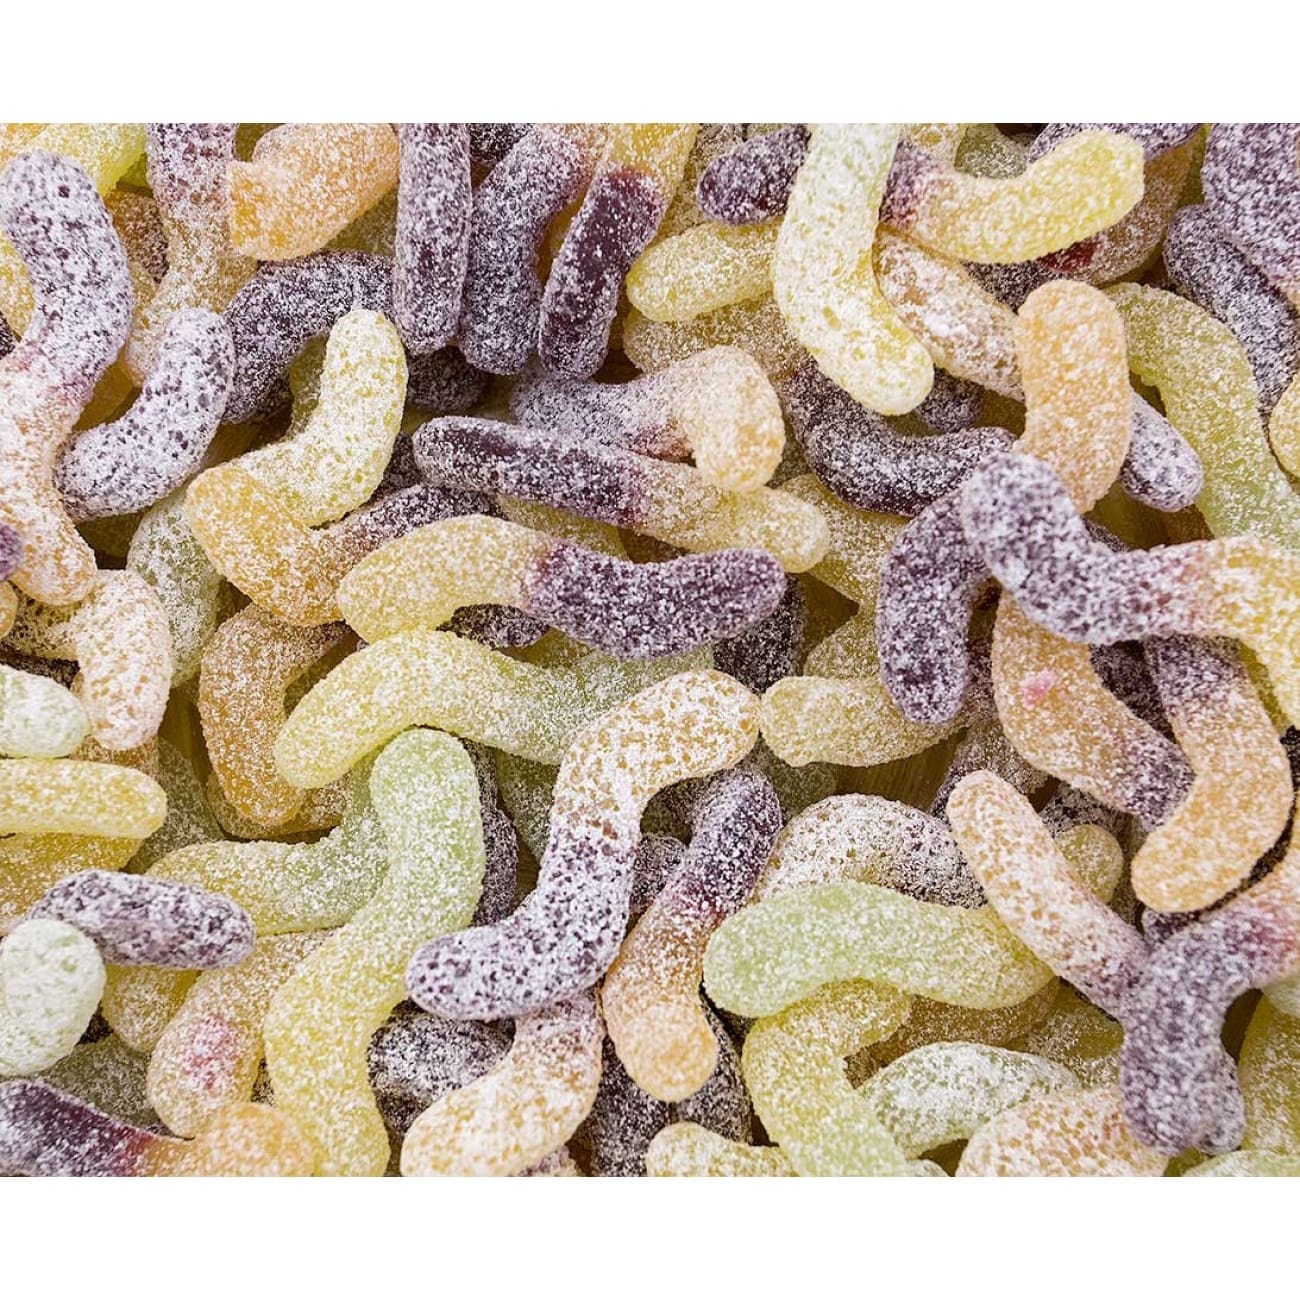 Organic Vegan Sour Worms Rock Chocs 